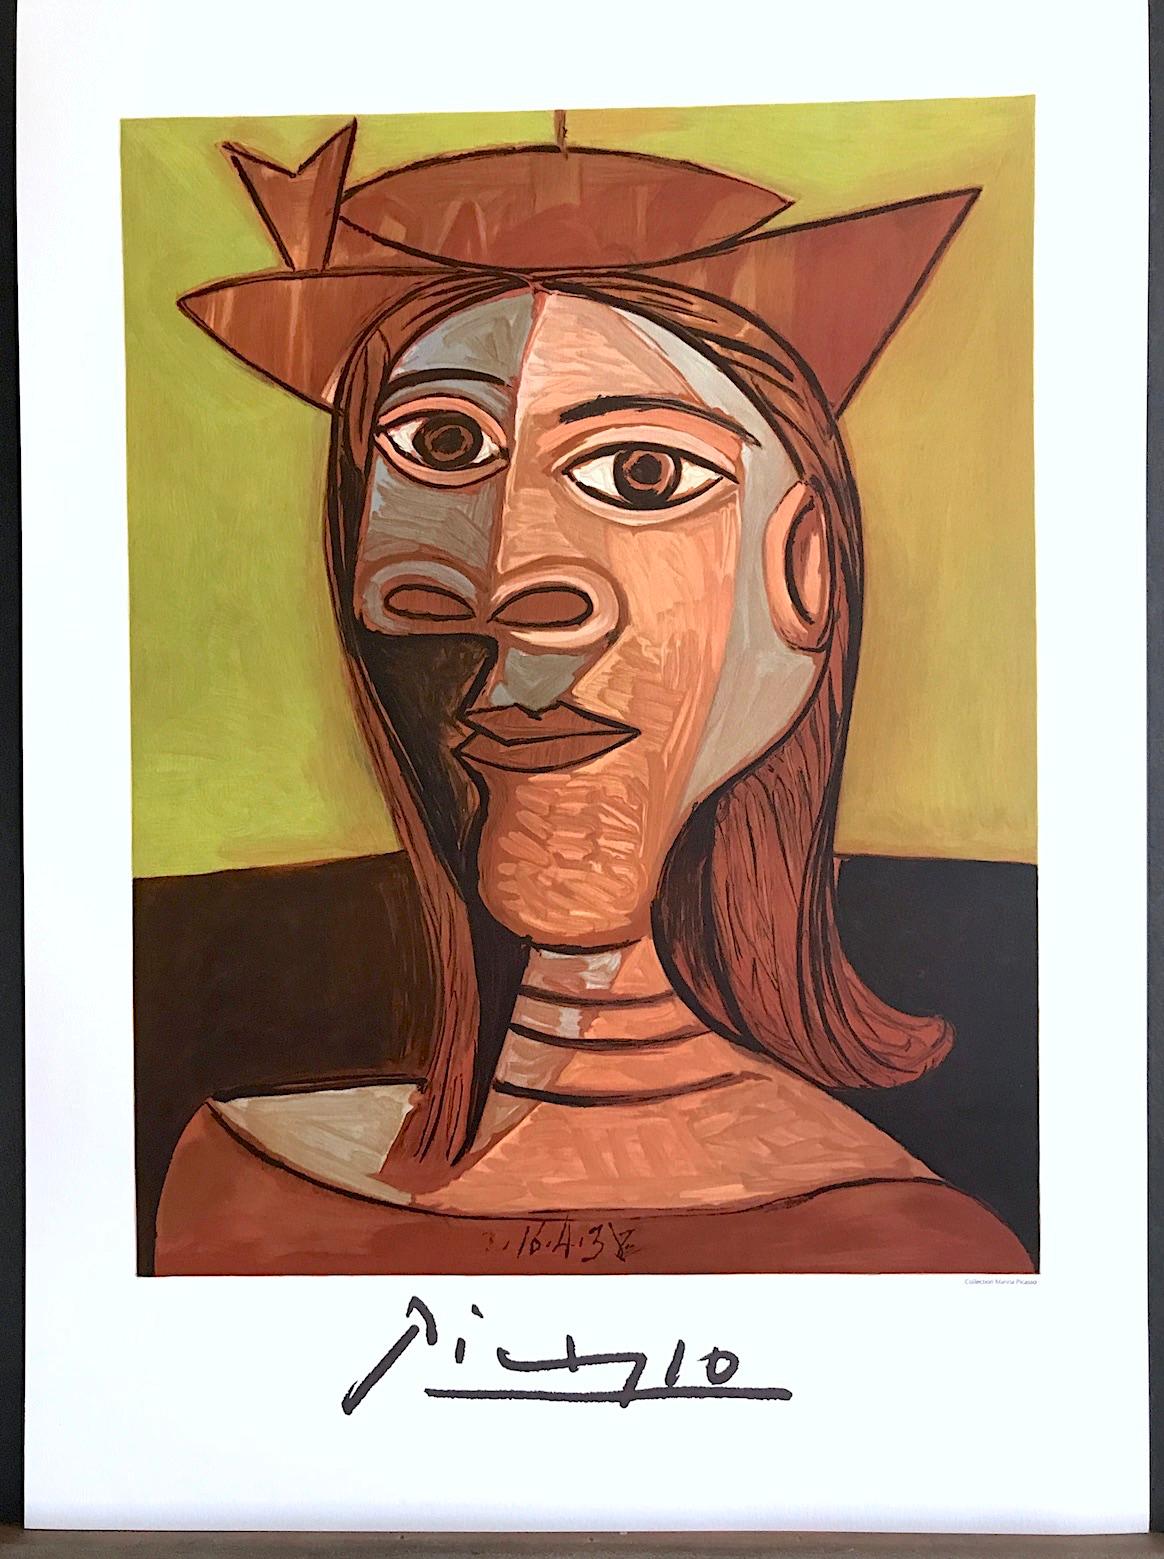 Künstler: Pablo Picasso, Nach, Spanier (1881 - 1973)
Titel: Tete de Femme , #26-2
Jahr des ursprünglichen Kunstwerks: 1938
Medium: Lithographie auf Coventry-Papier, 100% säurefrei
Auflage von 1000, nicht nummeriert, nachlassgeprüfte gedruckte